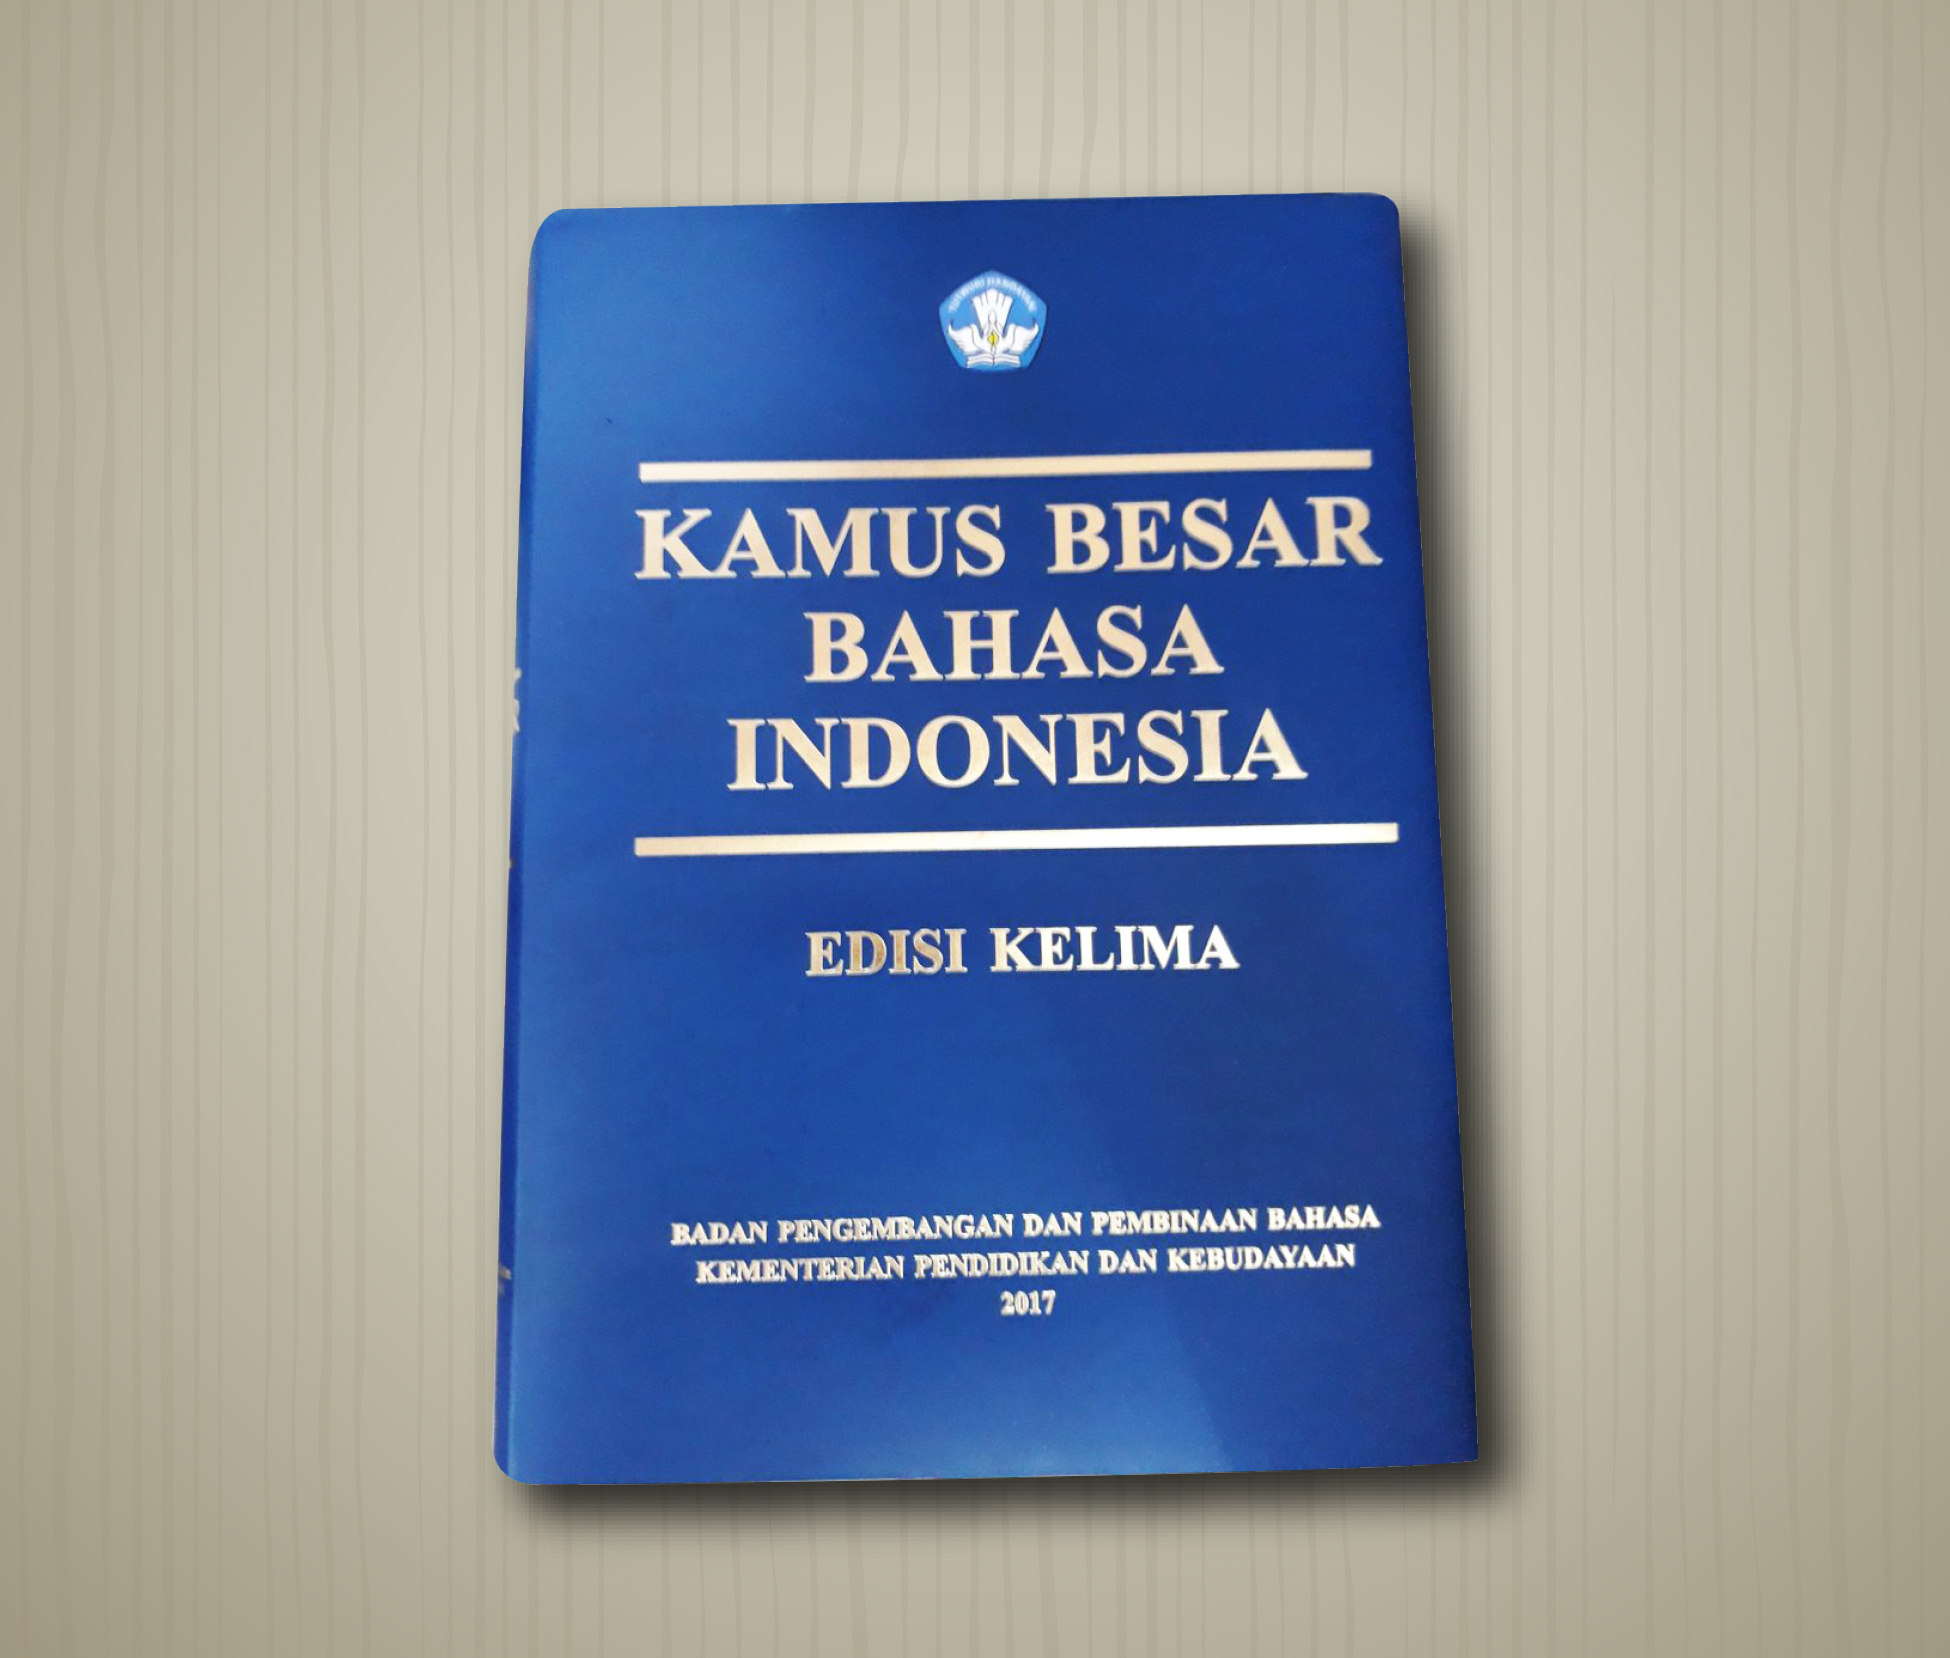 Pengumuman Hasil Pemeriksaan Pendaftar Calon Penyedia Jasa Pencetakan dan Penjualan Kamus Besar Bahasa Indonesia Edisi Kelima (KBBI V)